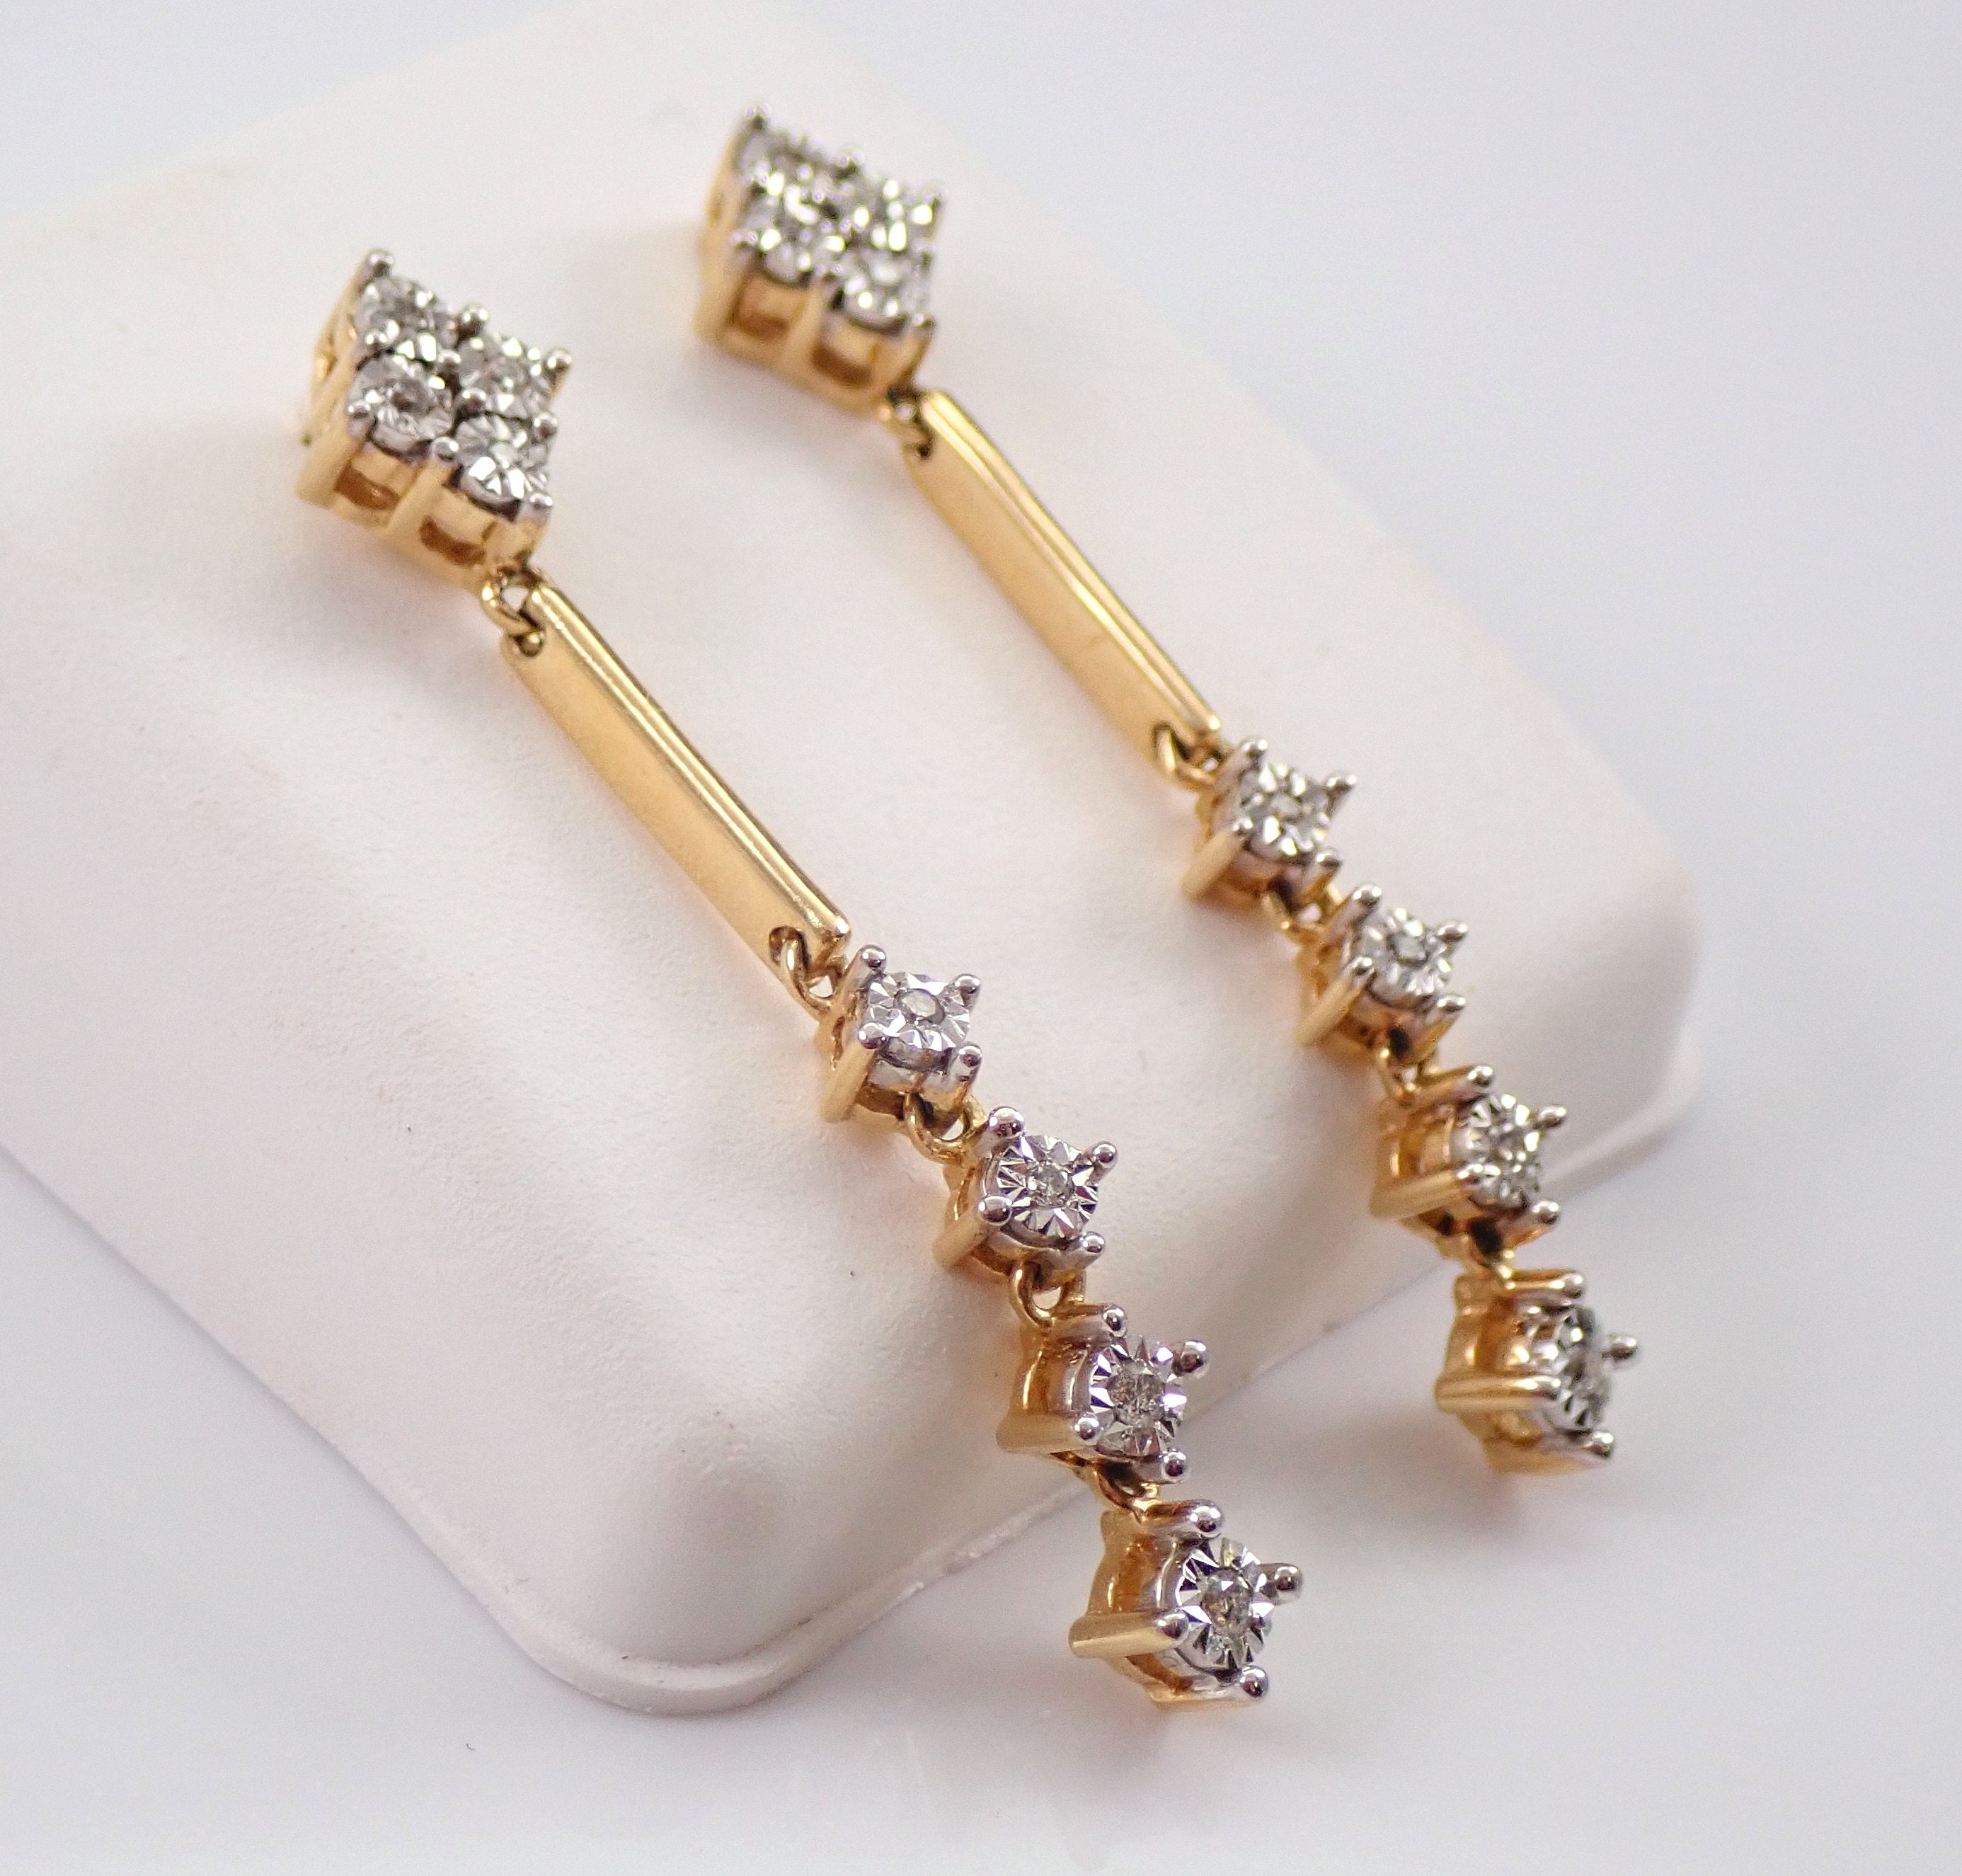 22K Gold Drop Earrings For Women - 235-GER16125 in 3.300 Grams